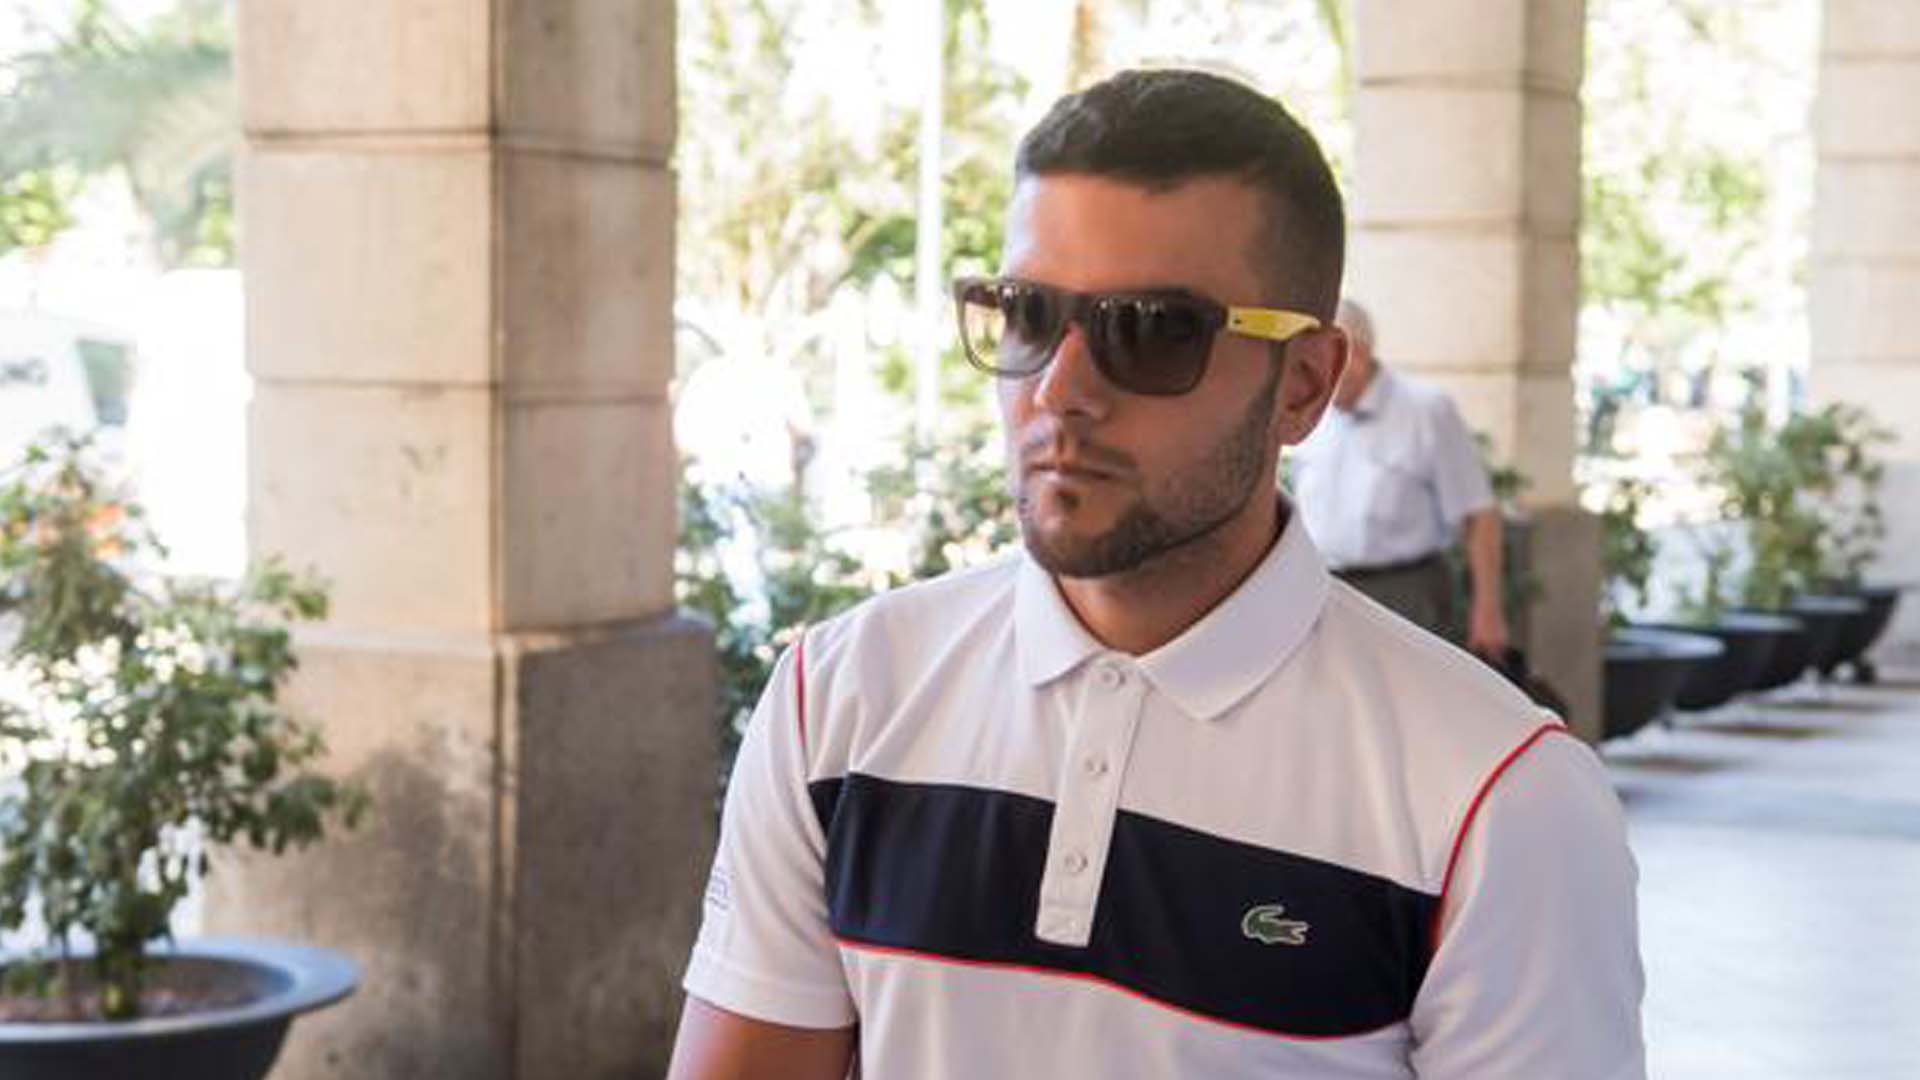 Abren juicio oral contra Ángel Boza, el miembro de La Manada que robó unas gafas de sol